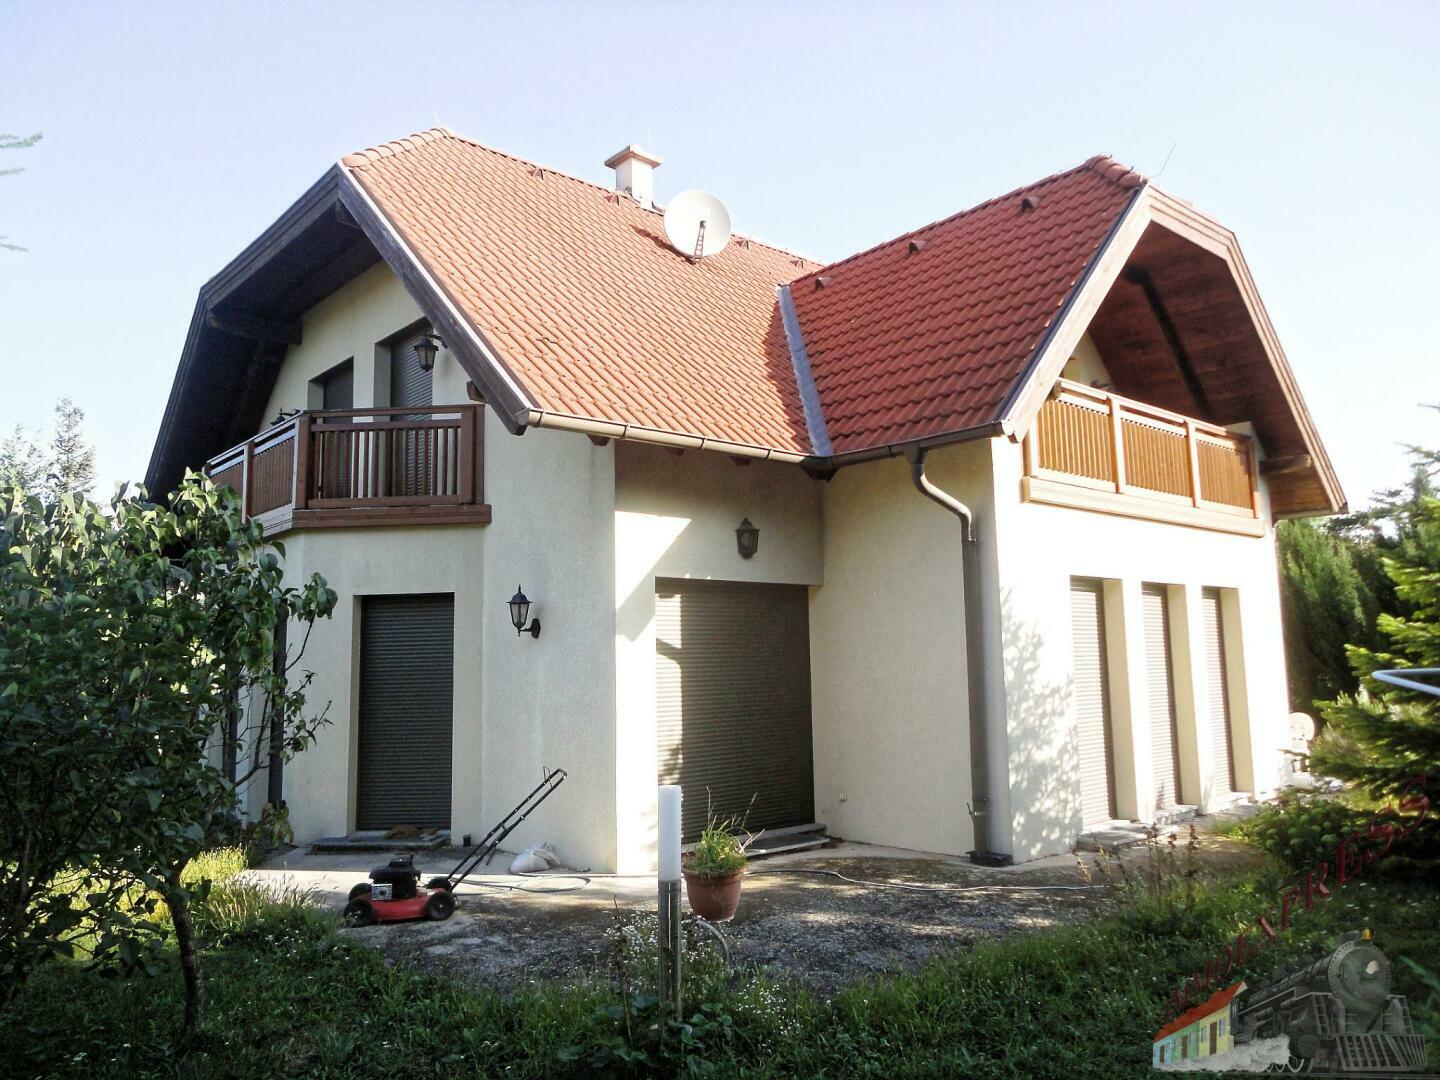 Großzügig gebautes Einfamilienhaus (Baumeisterhaus) auf 950m² Grund - 25min nach Wien!